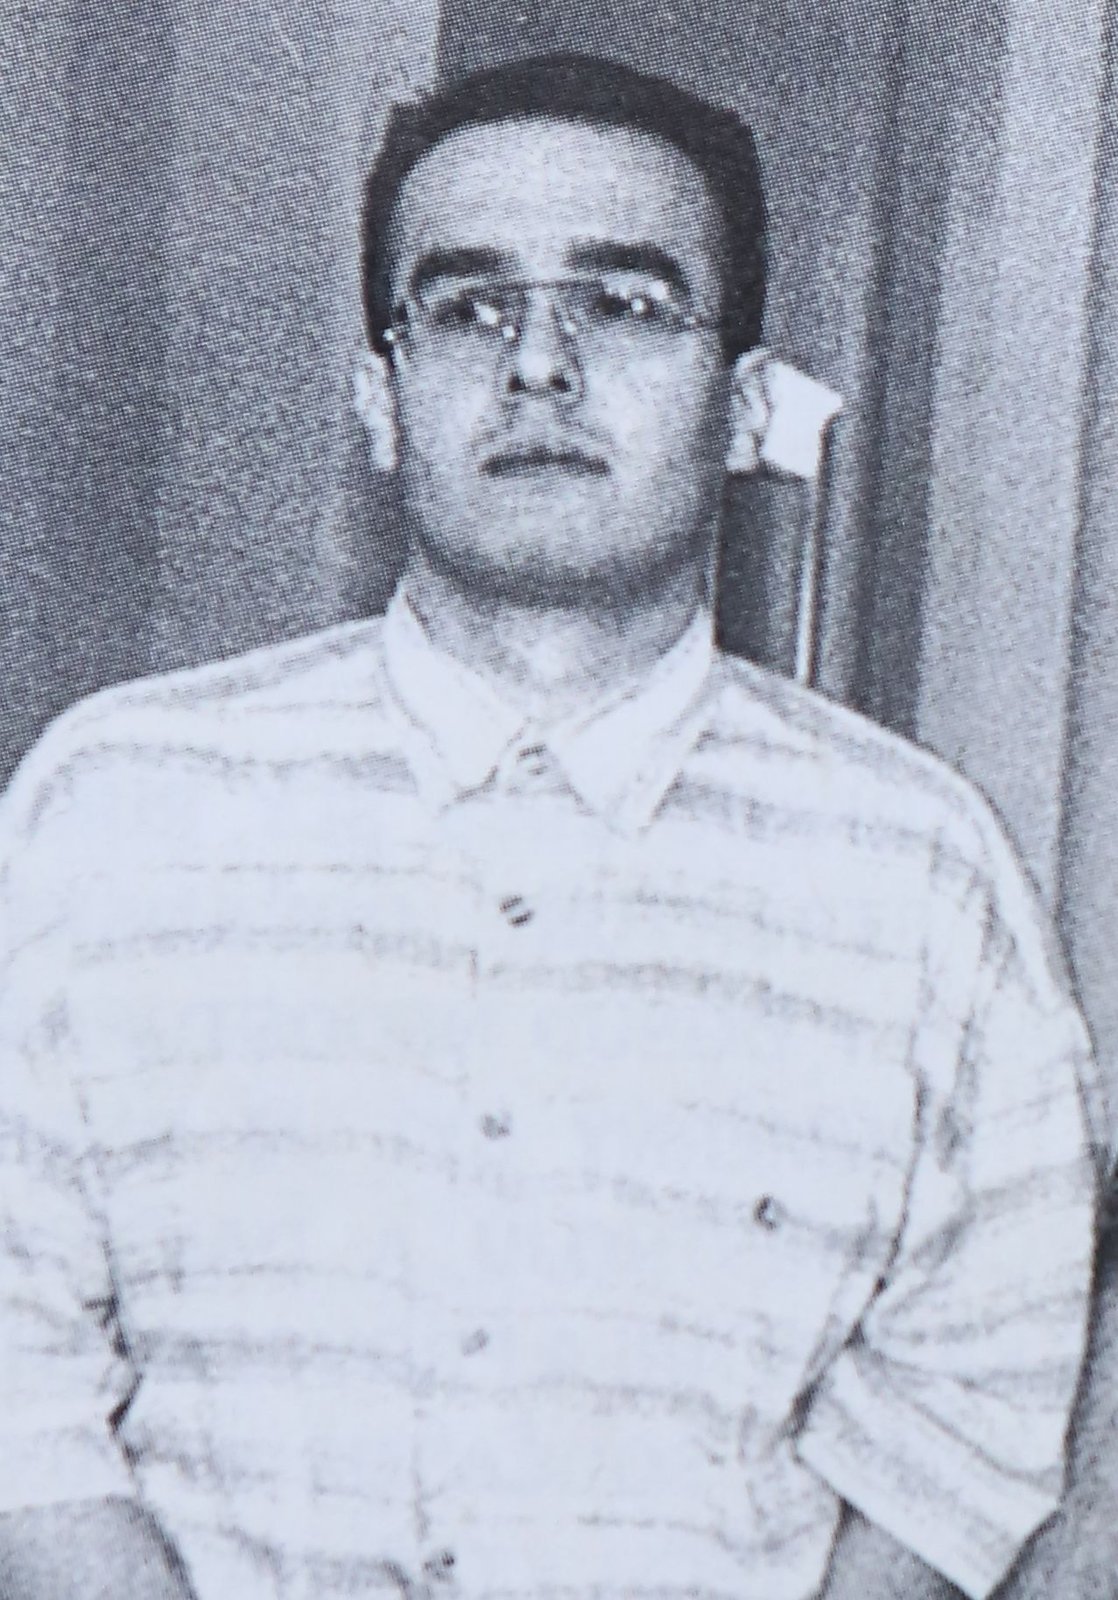 To ON zničil rodině život! Detektiva mjr. Jiřího Linharta (†29) zastřelil tehdy 21letý Petr Chromek 23. dubna 1998 v domě v Táboritské ulici na pražském Žižkově během zásahu proti pachatelům podezřelým z loupeží, únosů a vydírání. Dalšího jeho kolegu postřelil. Soud ho poslal za mříže na 22 let.